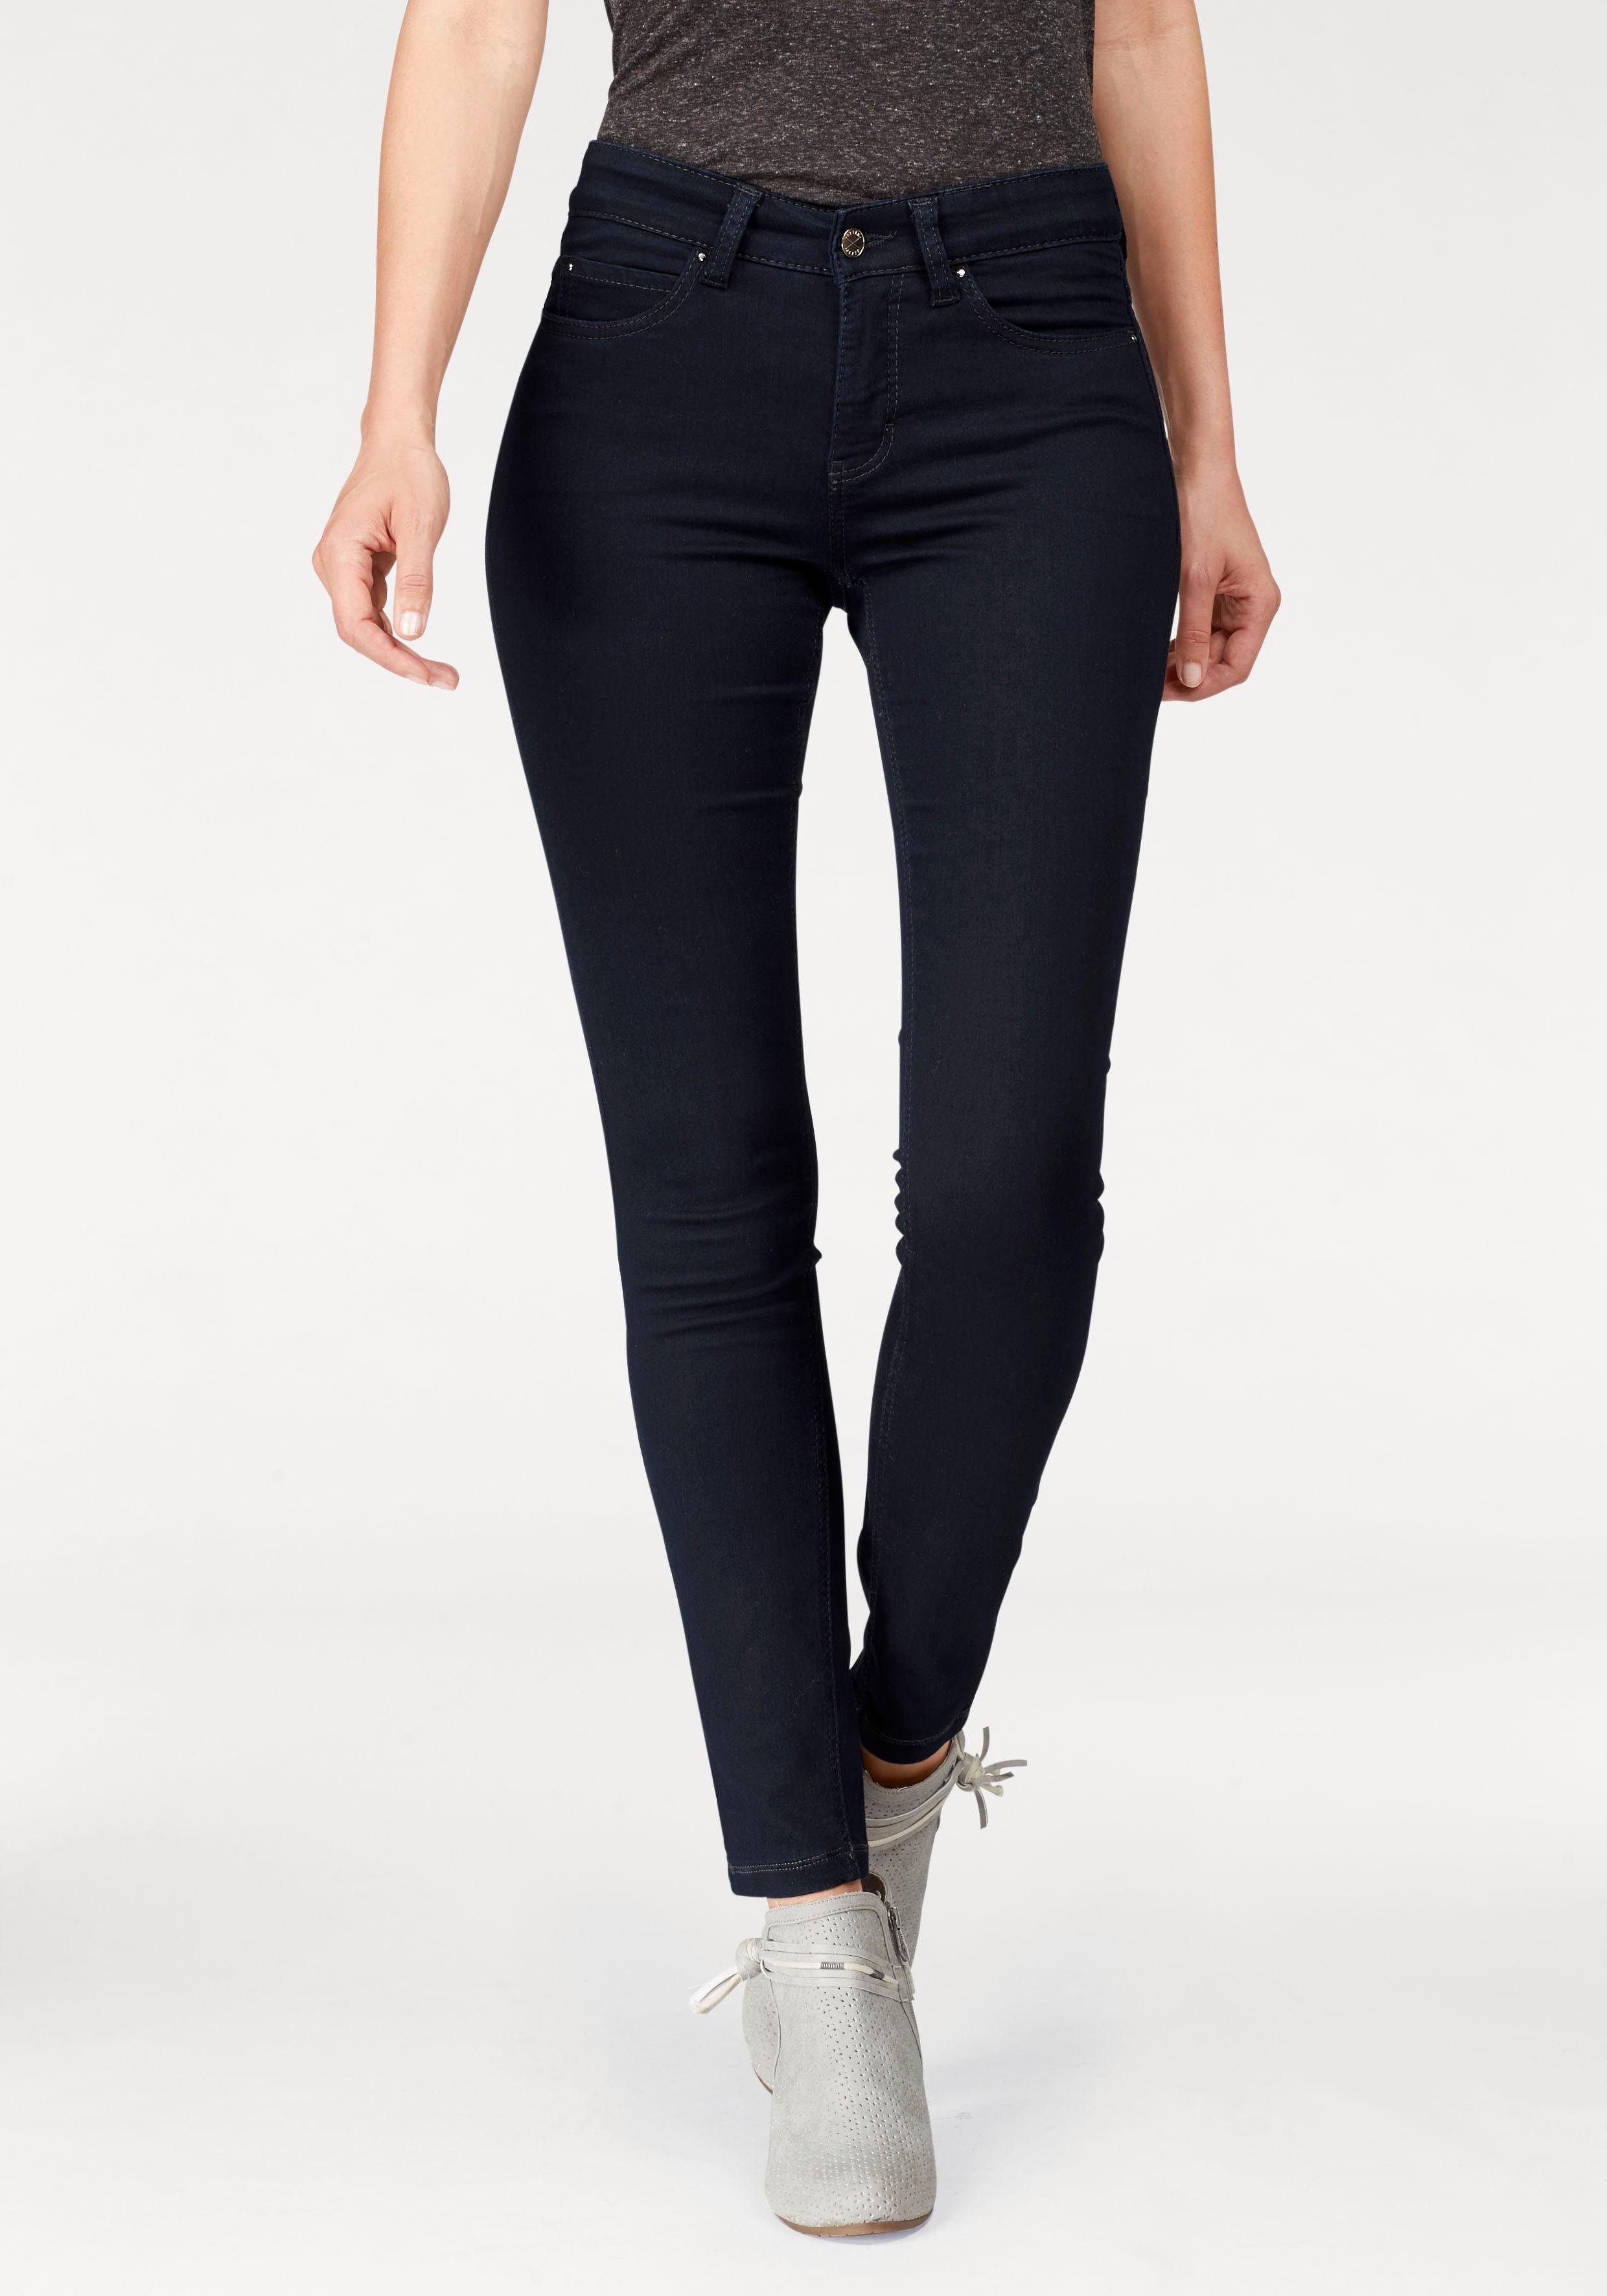 mac skinny fit jeans dream skinny zeer elastische kwaliteit voor een perfecte pasvorm blauw